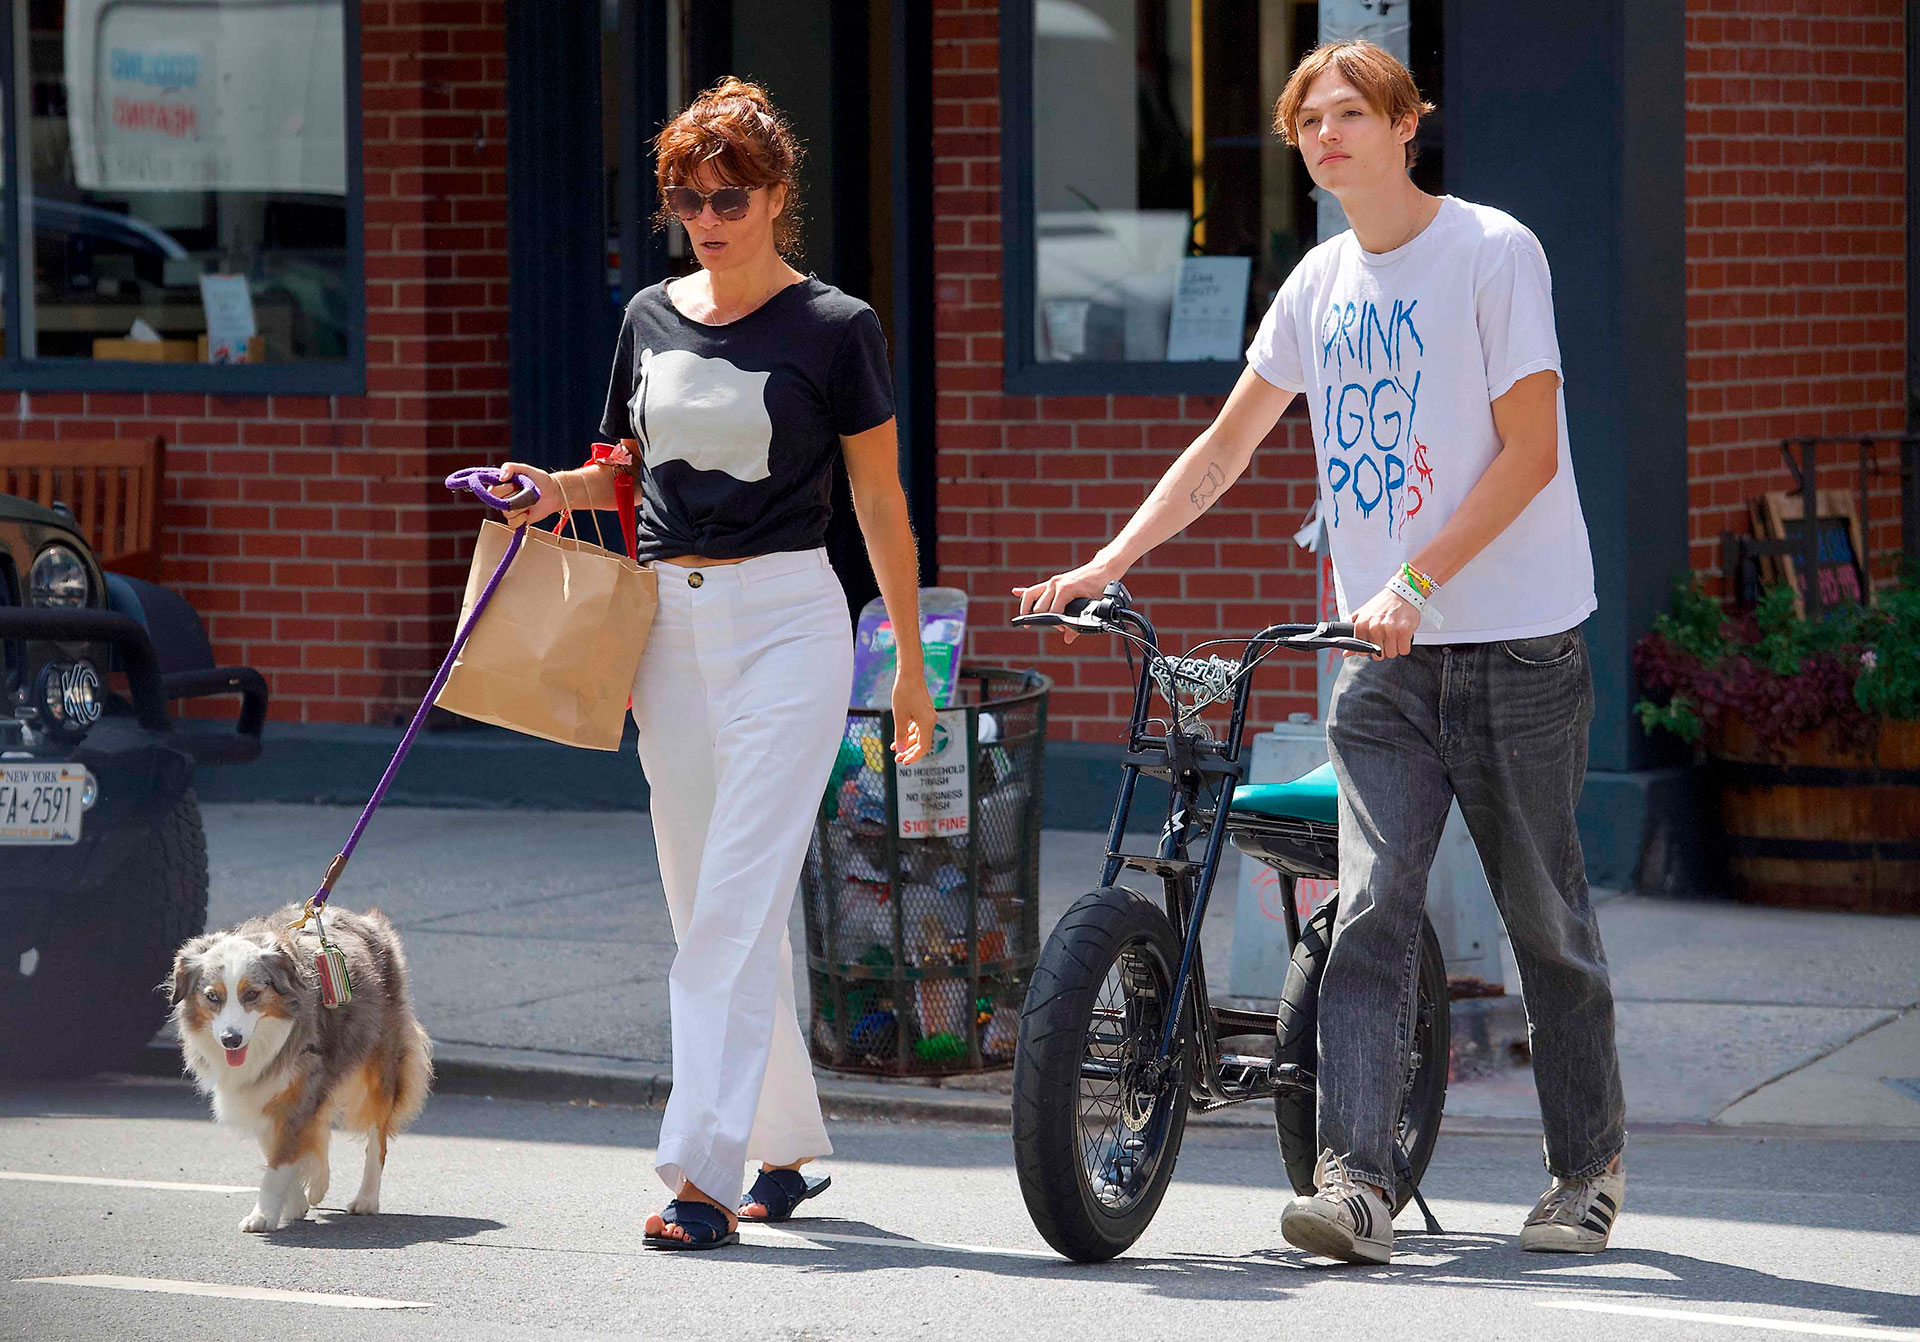 Paseo en familia. Helena Christensen disfrutó de un día al aire libre con su hijo Mingus, quien llevó su bicicleta, y su mascota por las calles de Nueva York. La modelo lució una remera negra estampada y un pantalón blanco